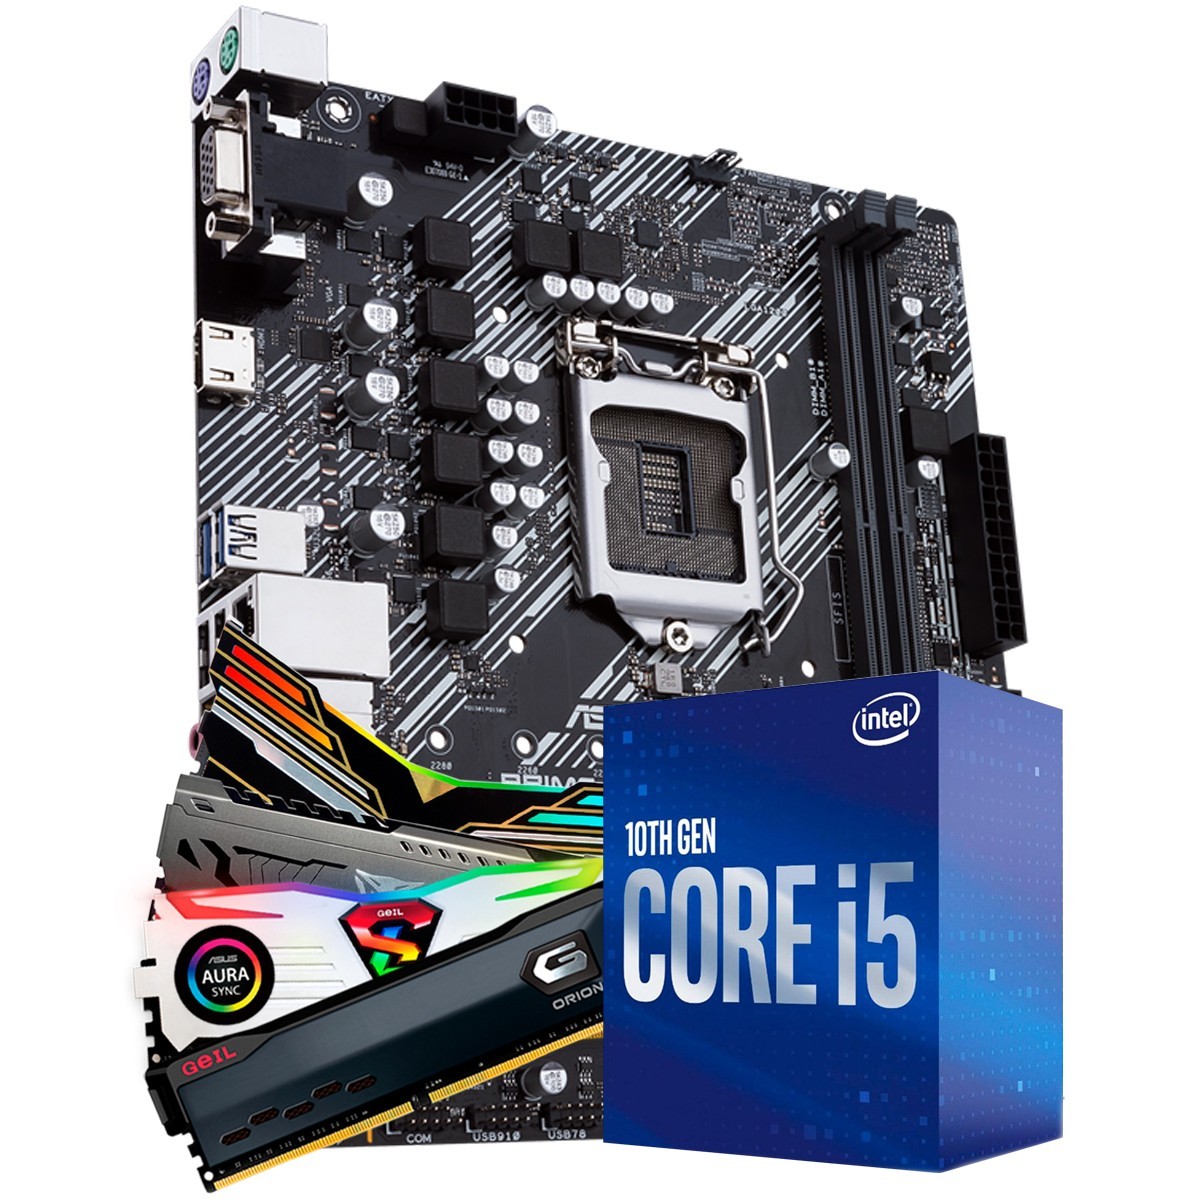 Kit Upgrade, Intel i5 10400 + Placa Mãe H510 + 8GB DDR4